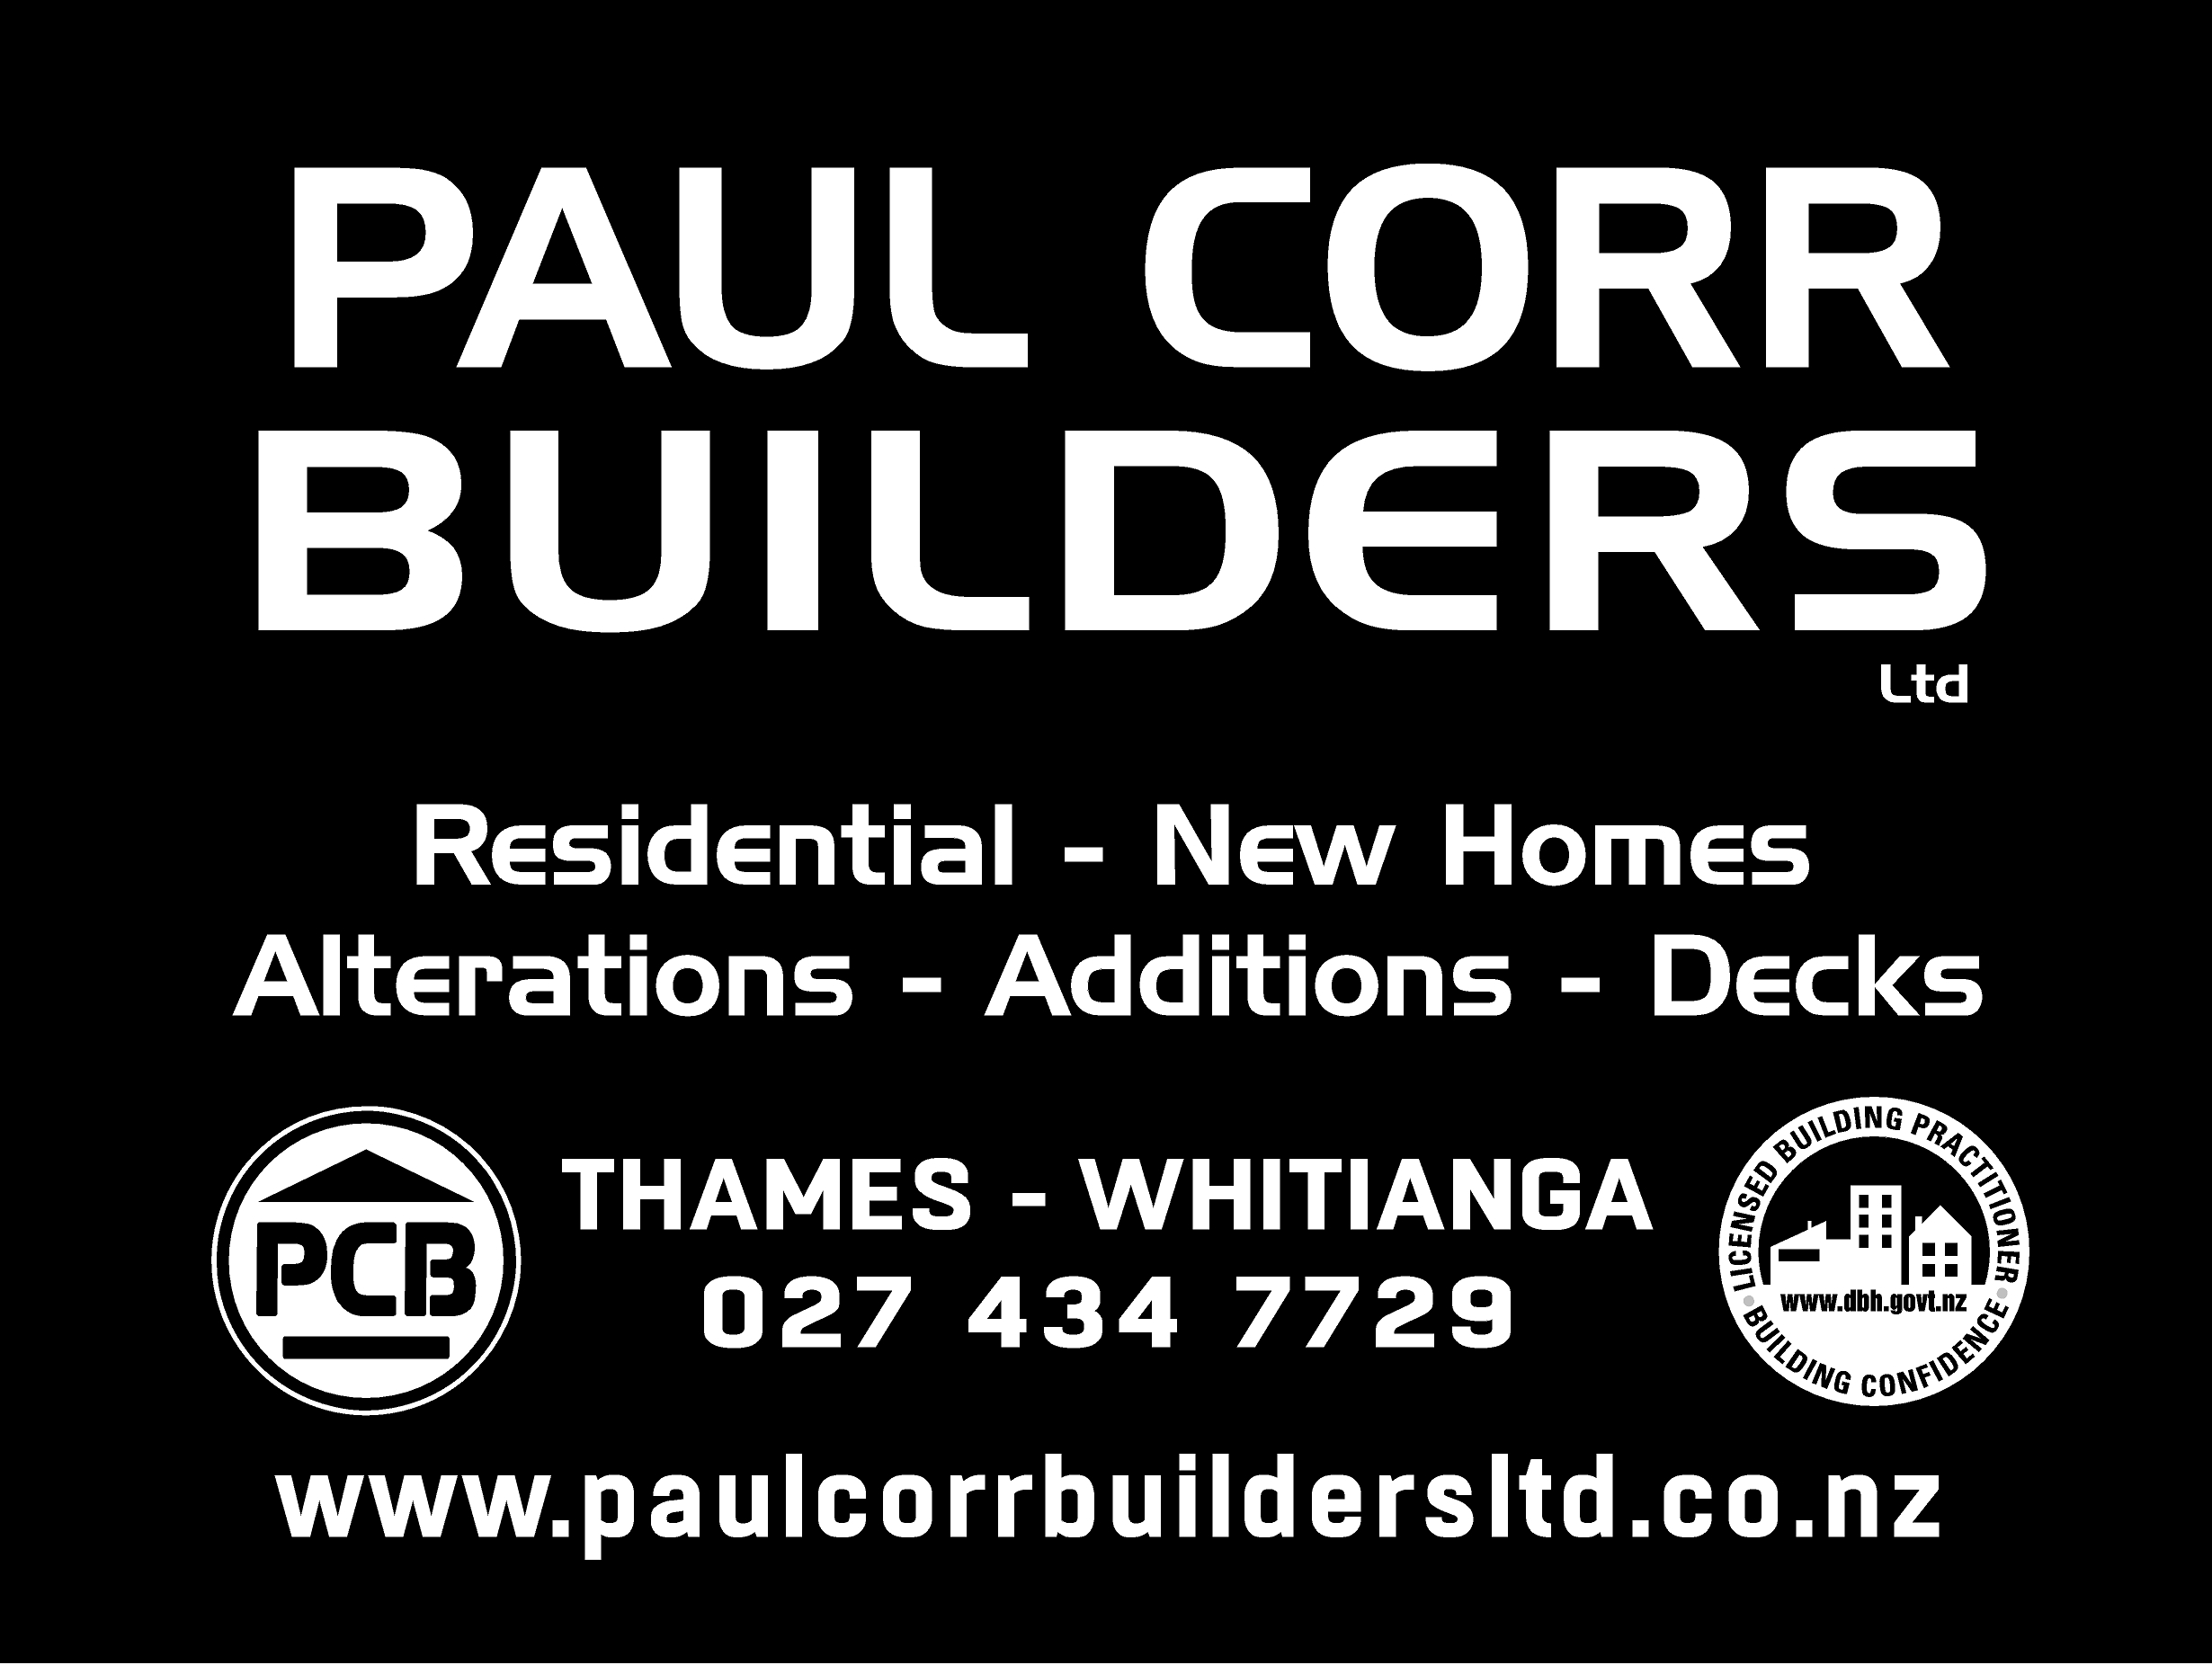 Paul Corr Builders